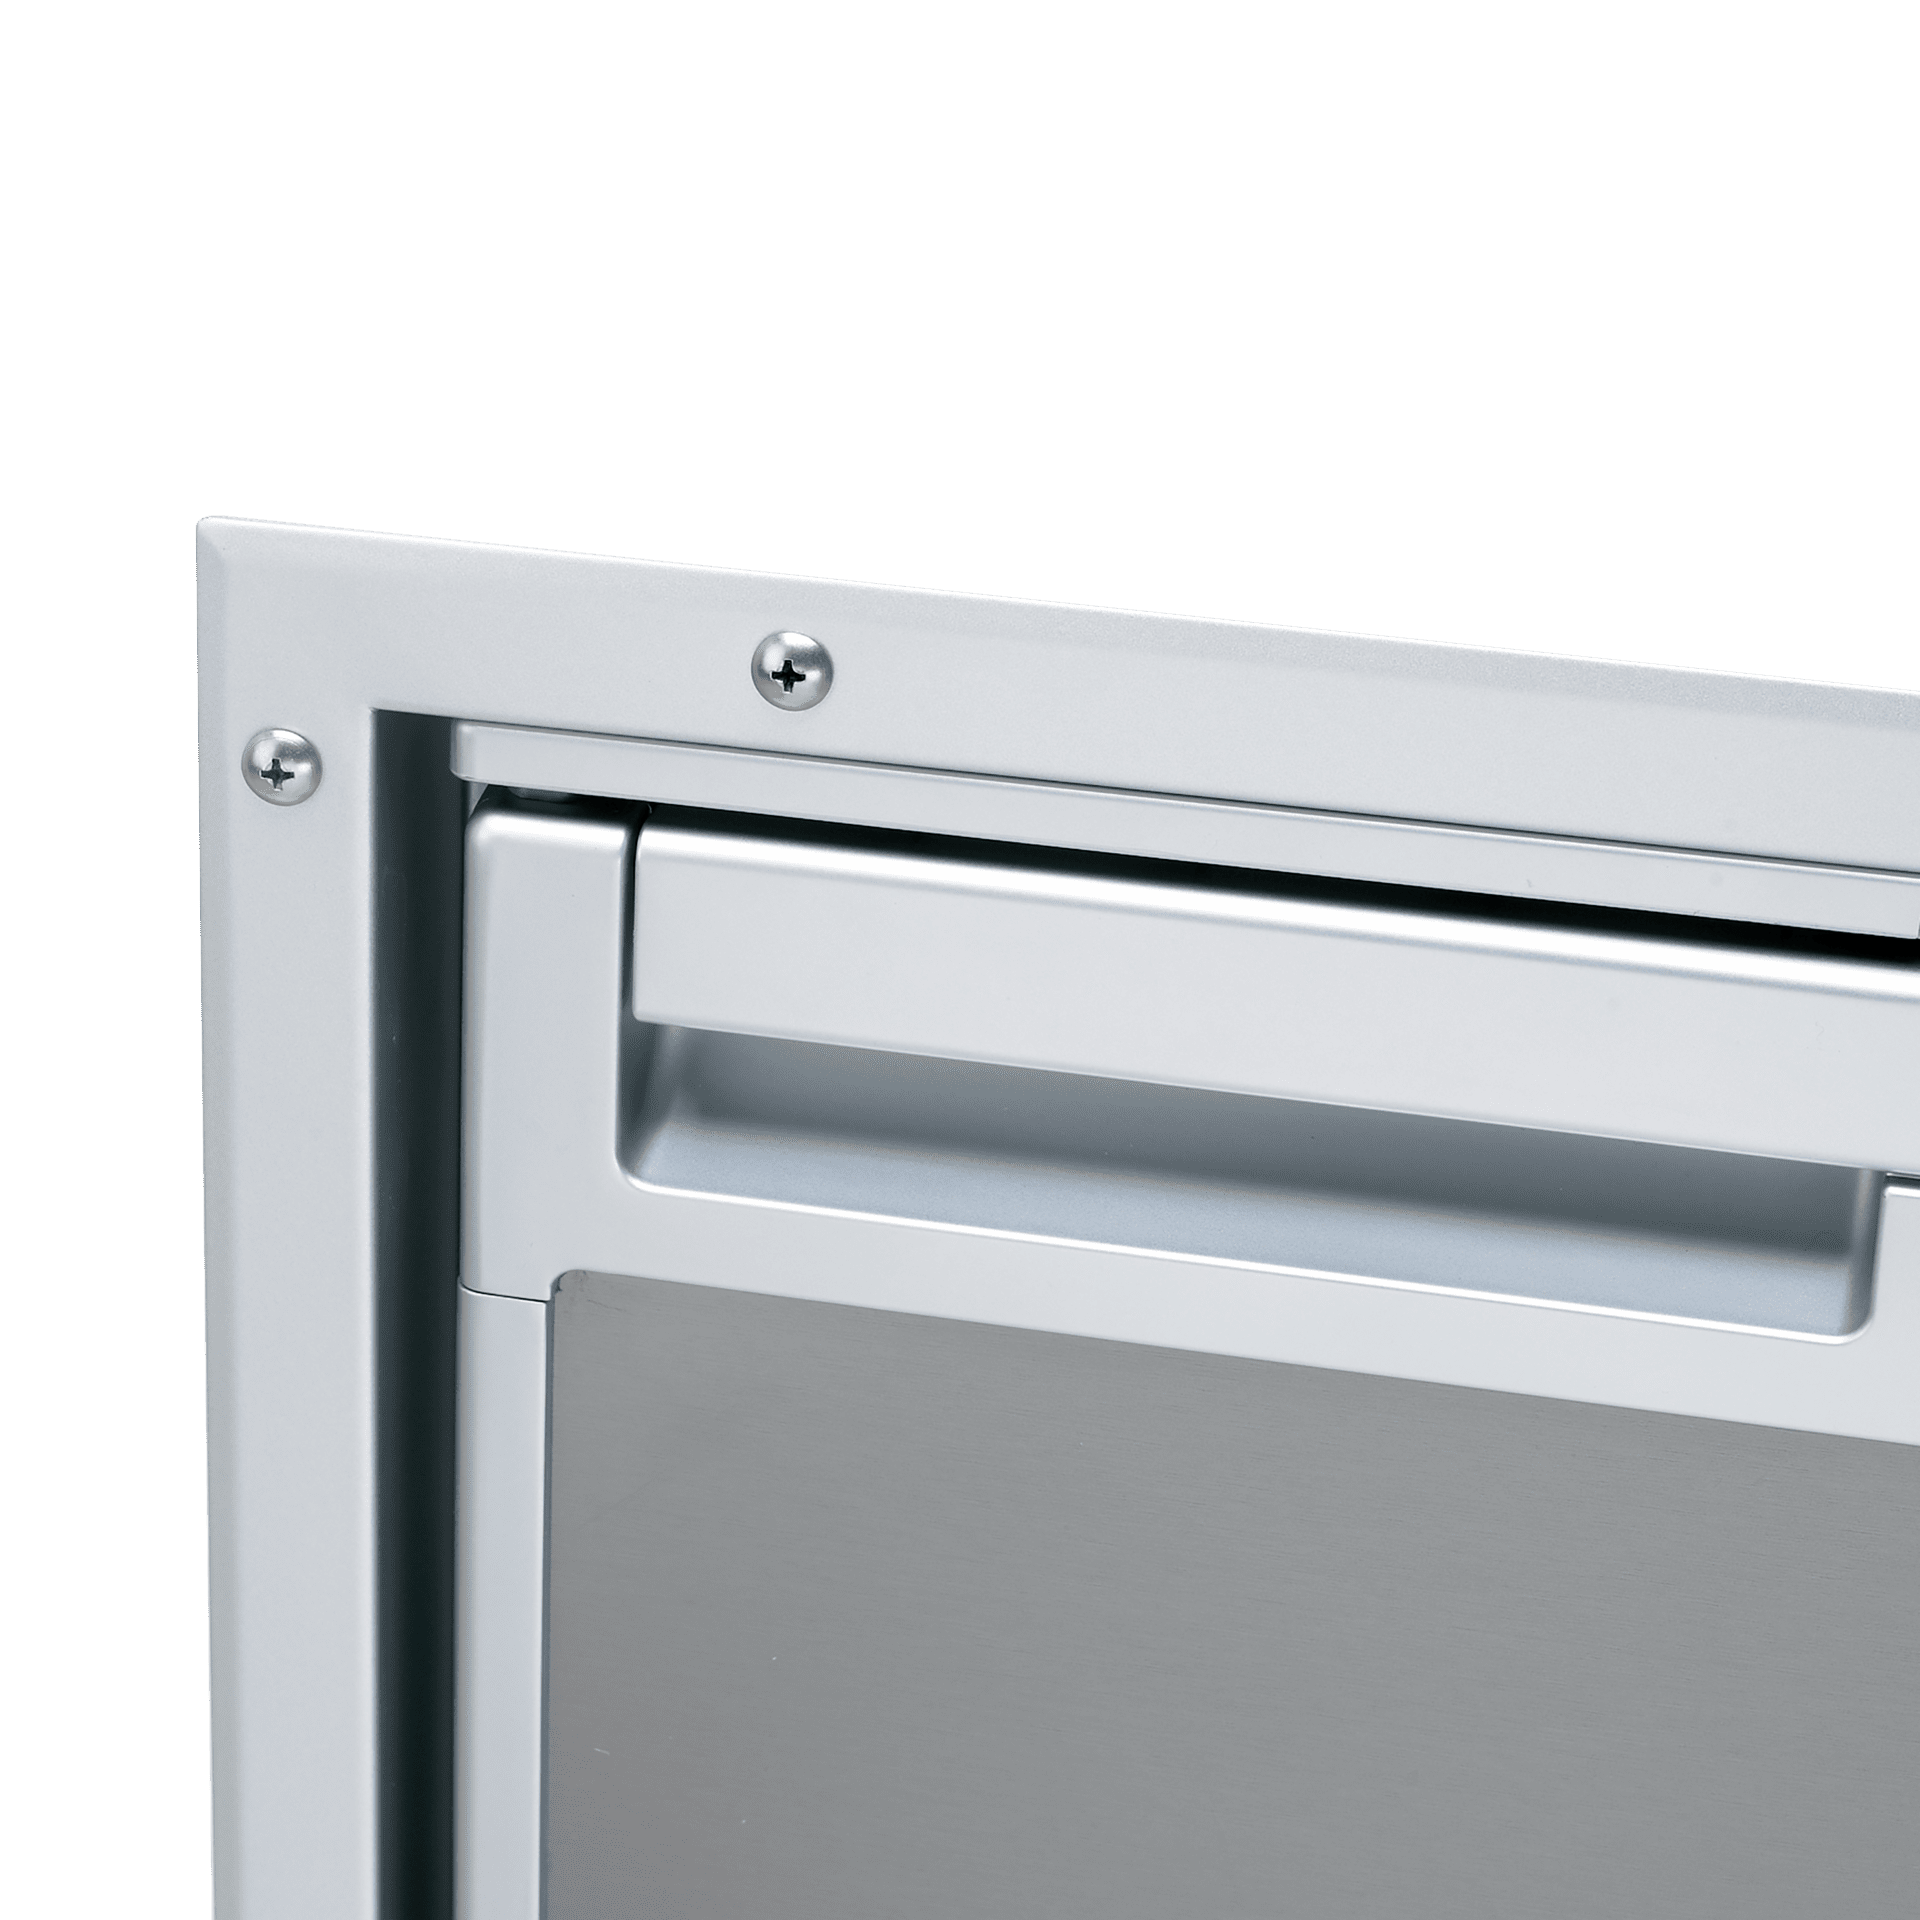 DOMETIC Pièces détachées réfrigérateur CR-0050